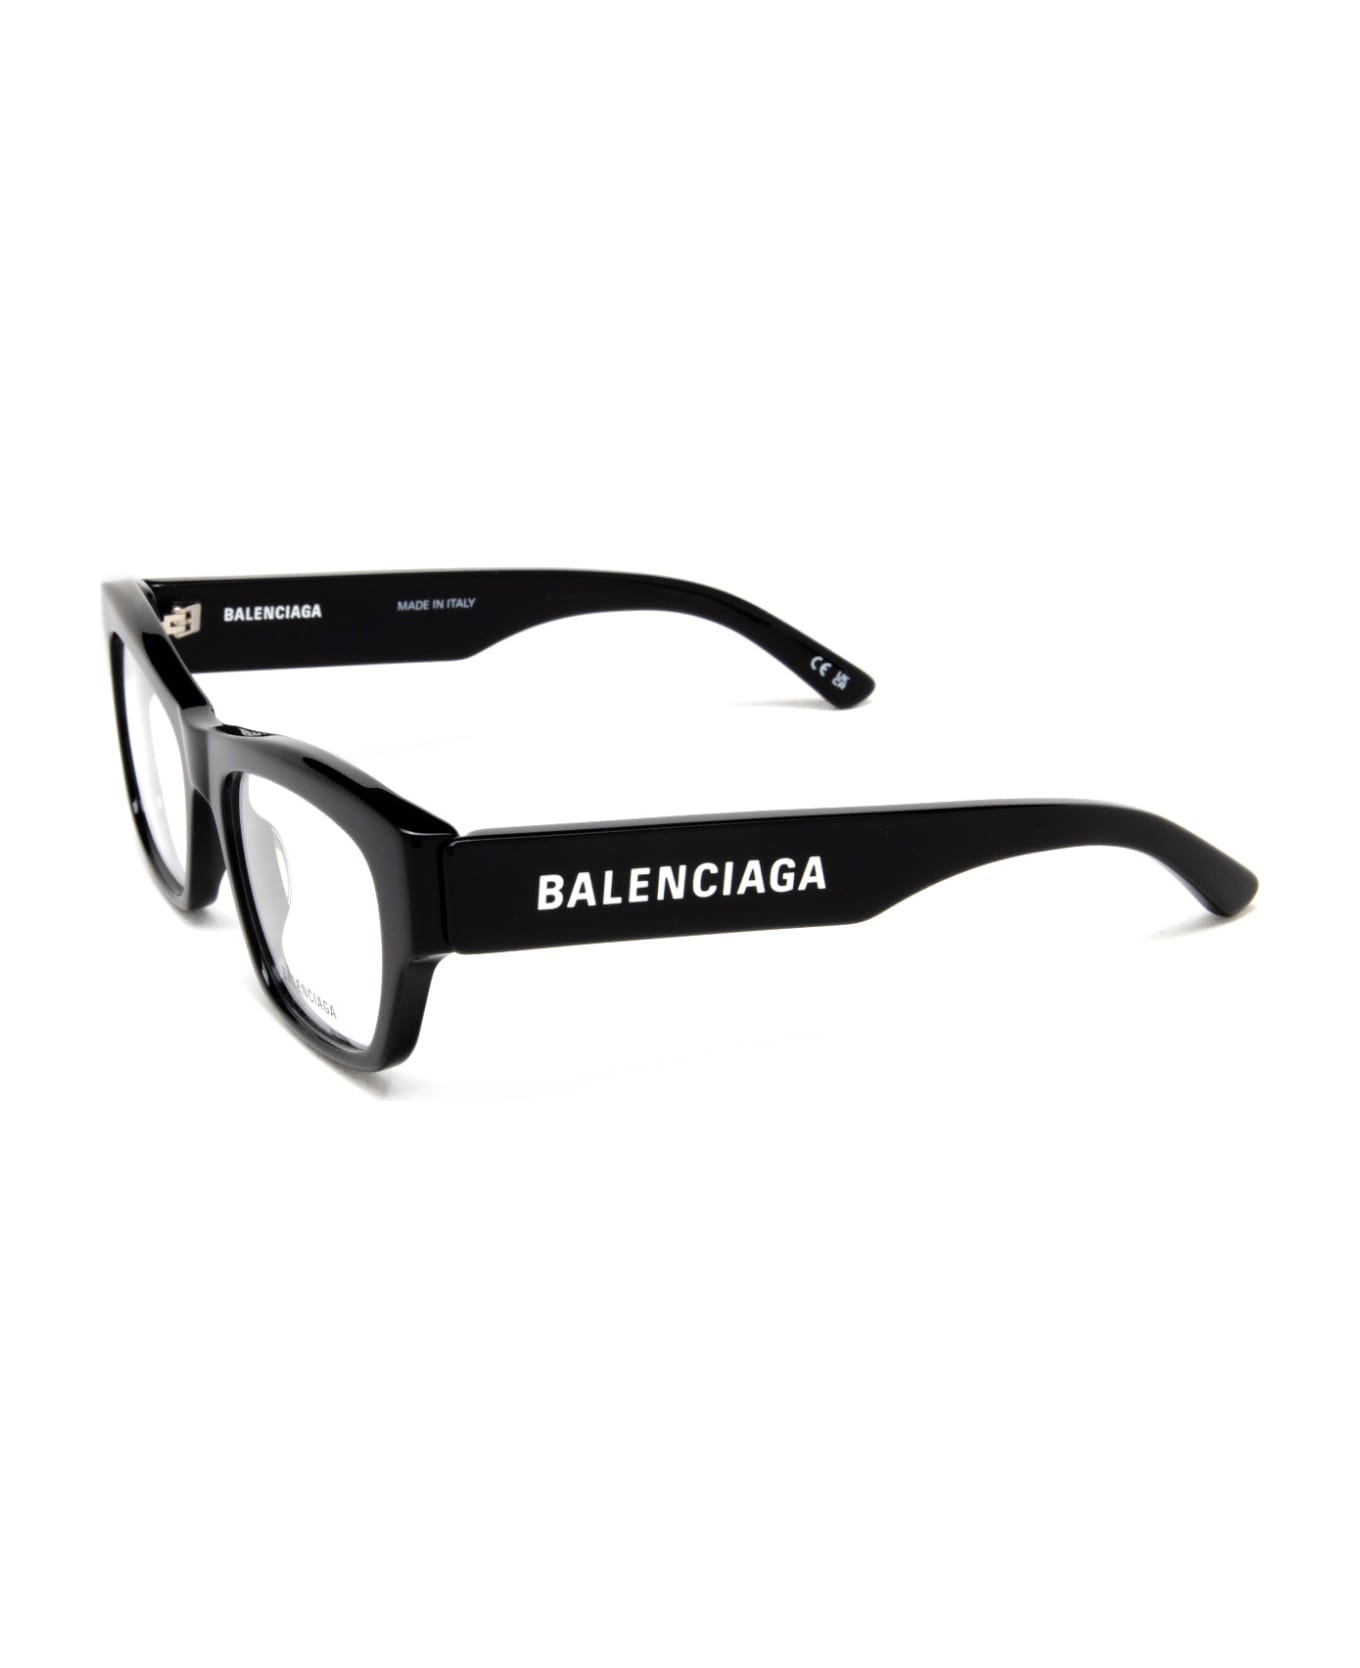 Balenciaga Eyewear Bb0264o Glasses - Black